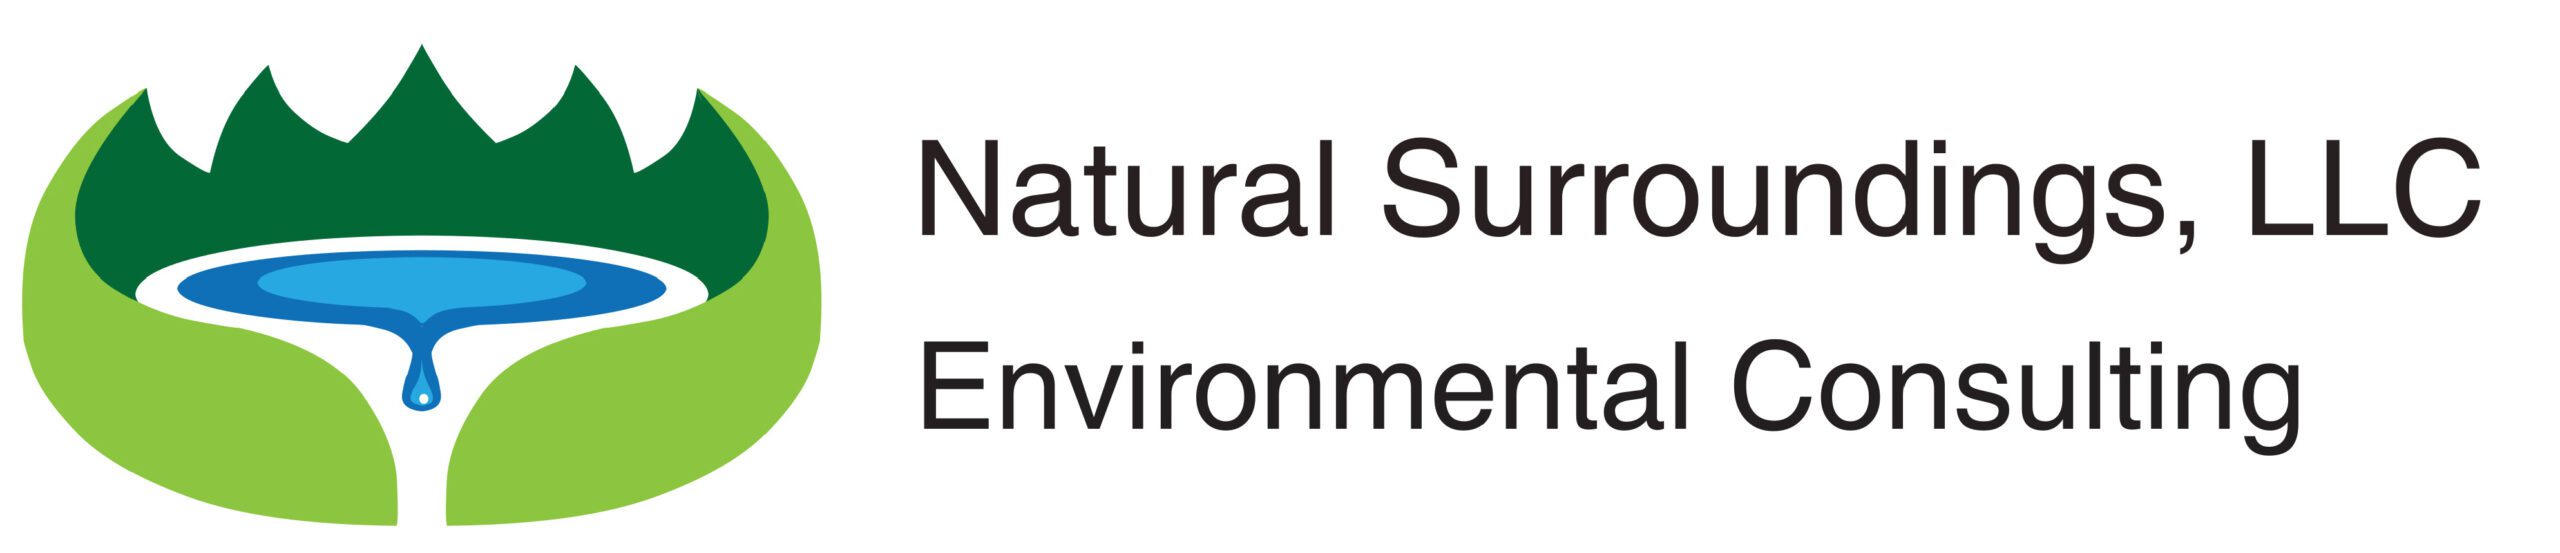 Natural Surroundings LLC logo